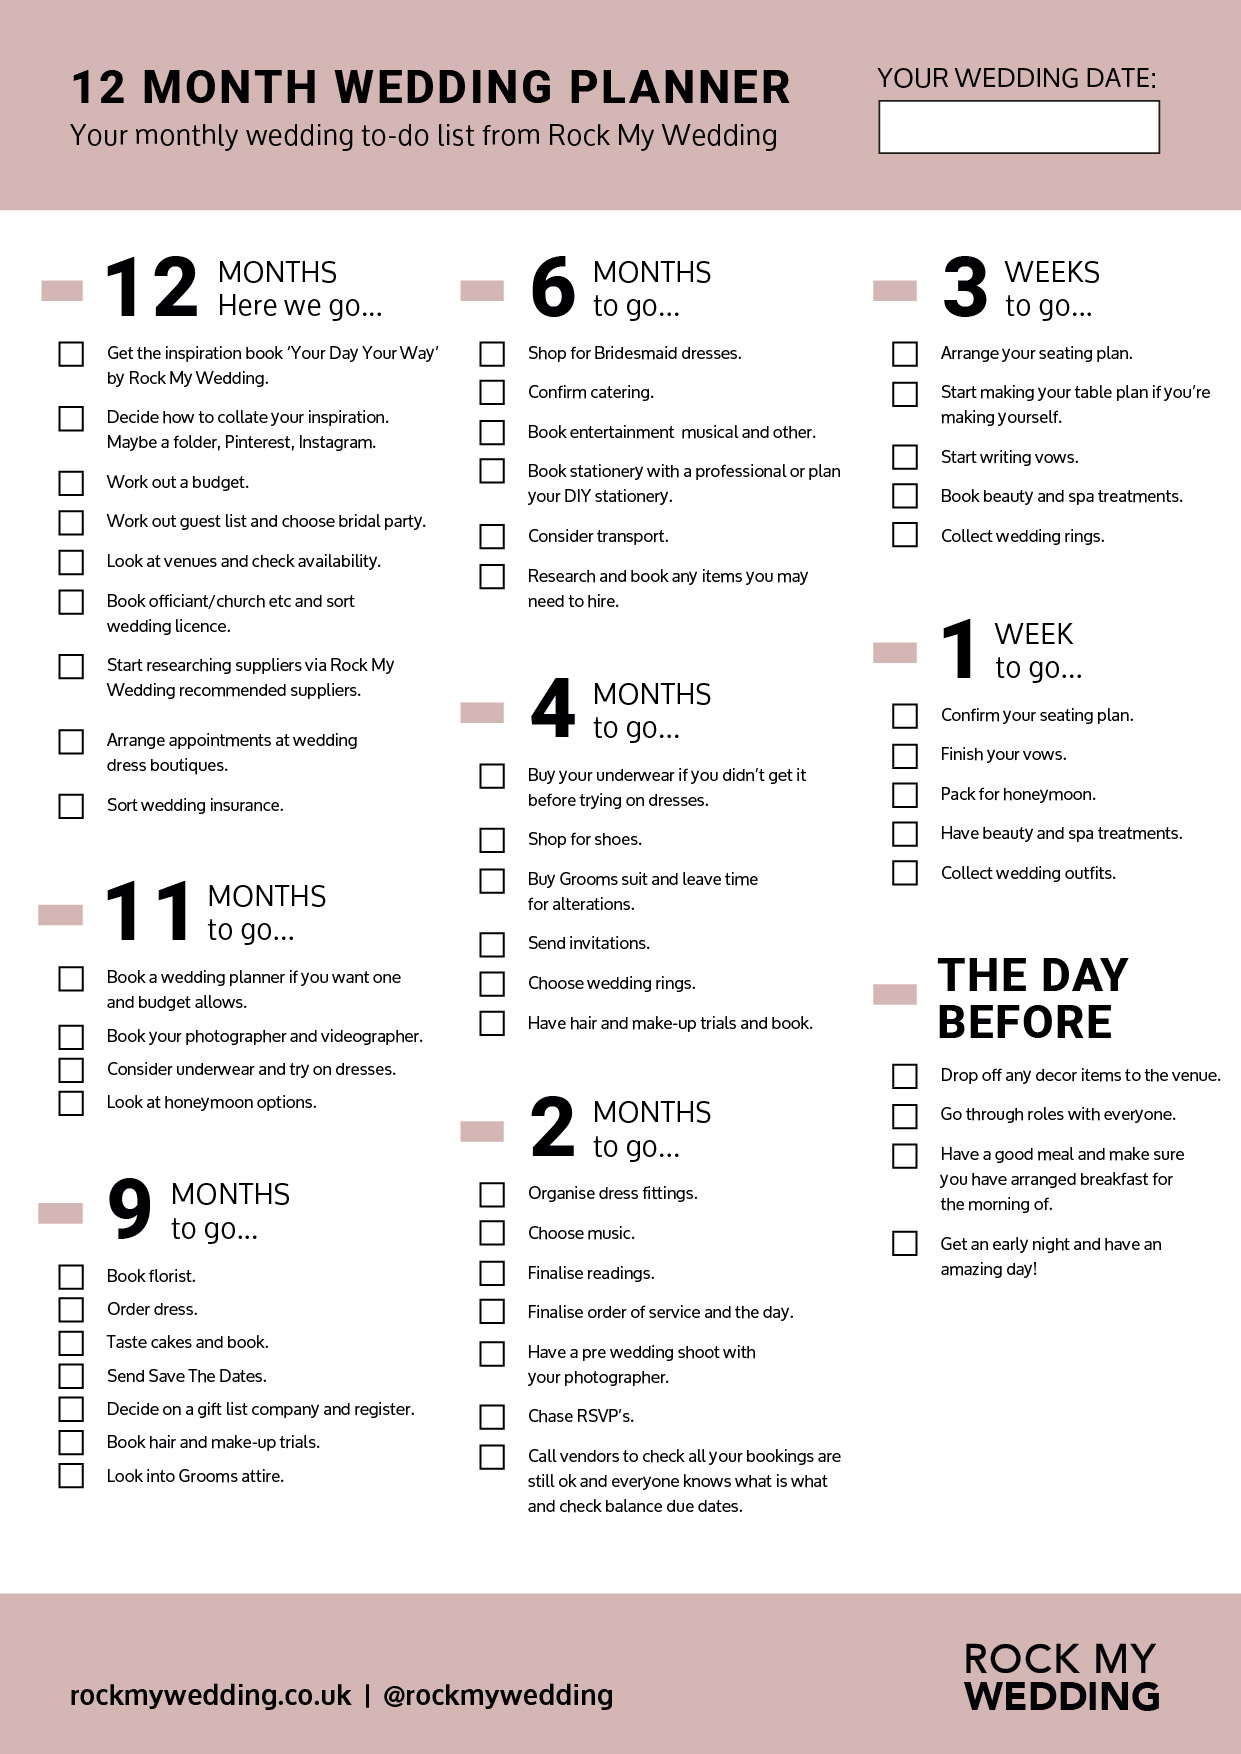 12 month wedding planning checklist